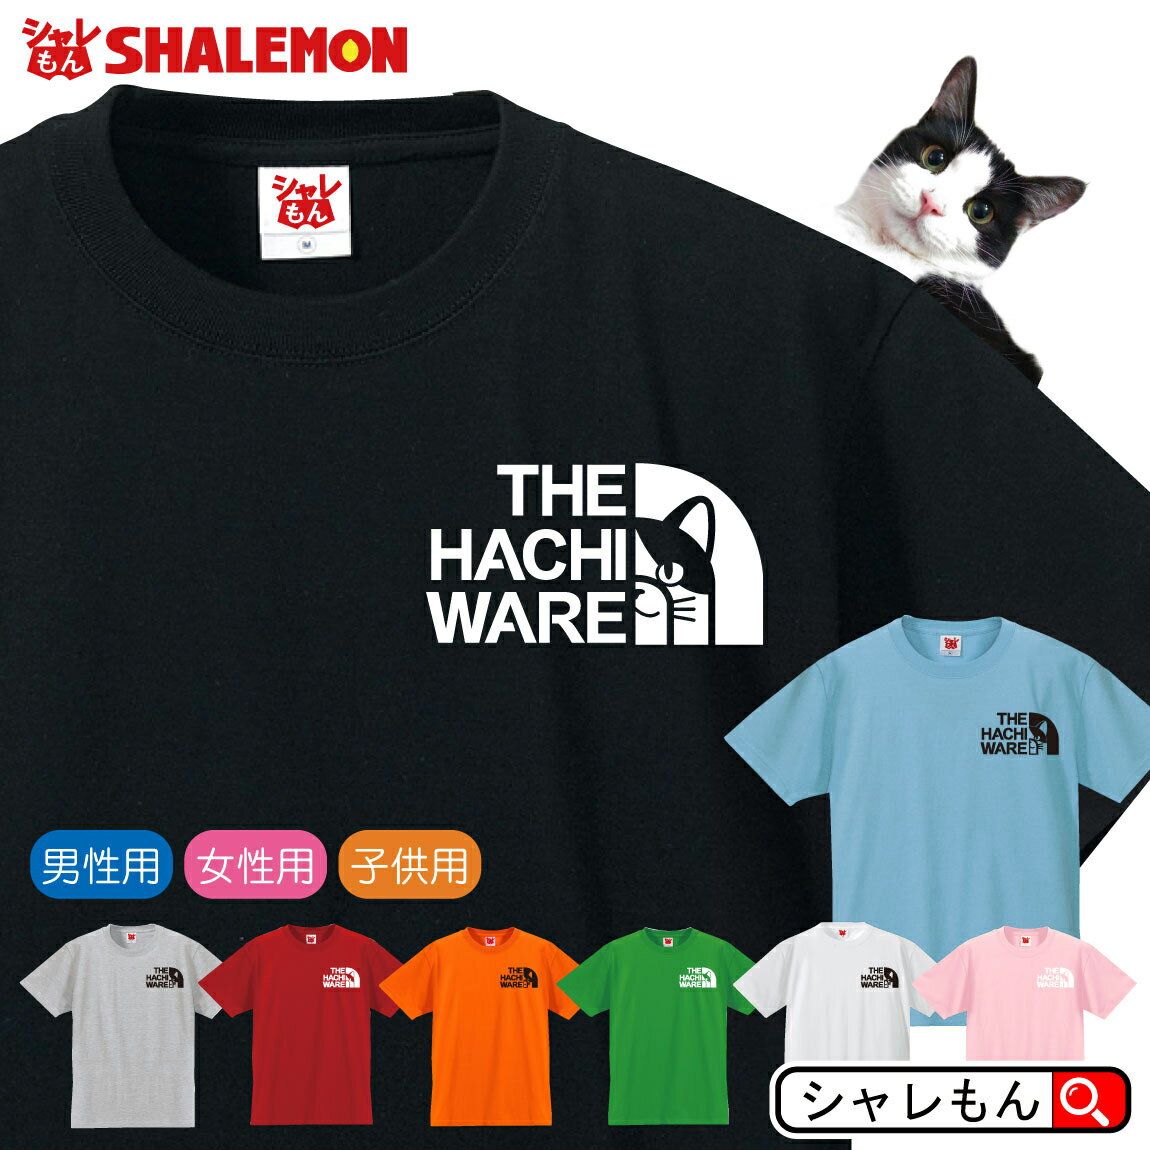 ハチワレネコ おもしろTシャツ 【 選べる8色 ...の商品画像